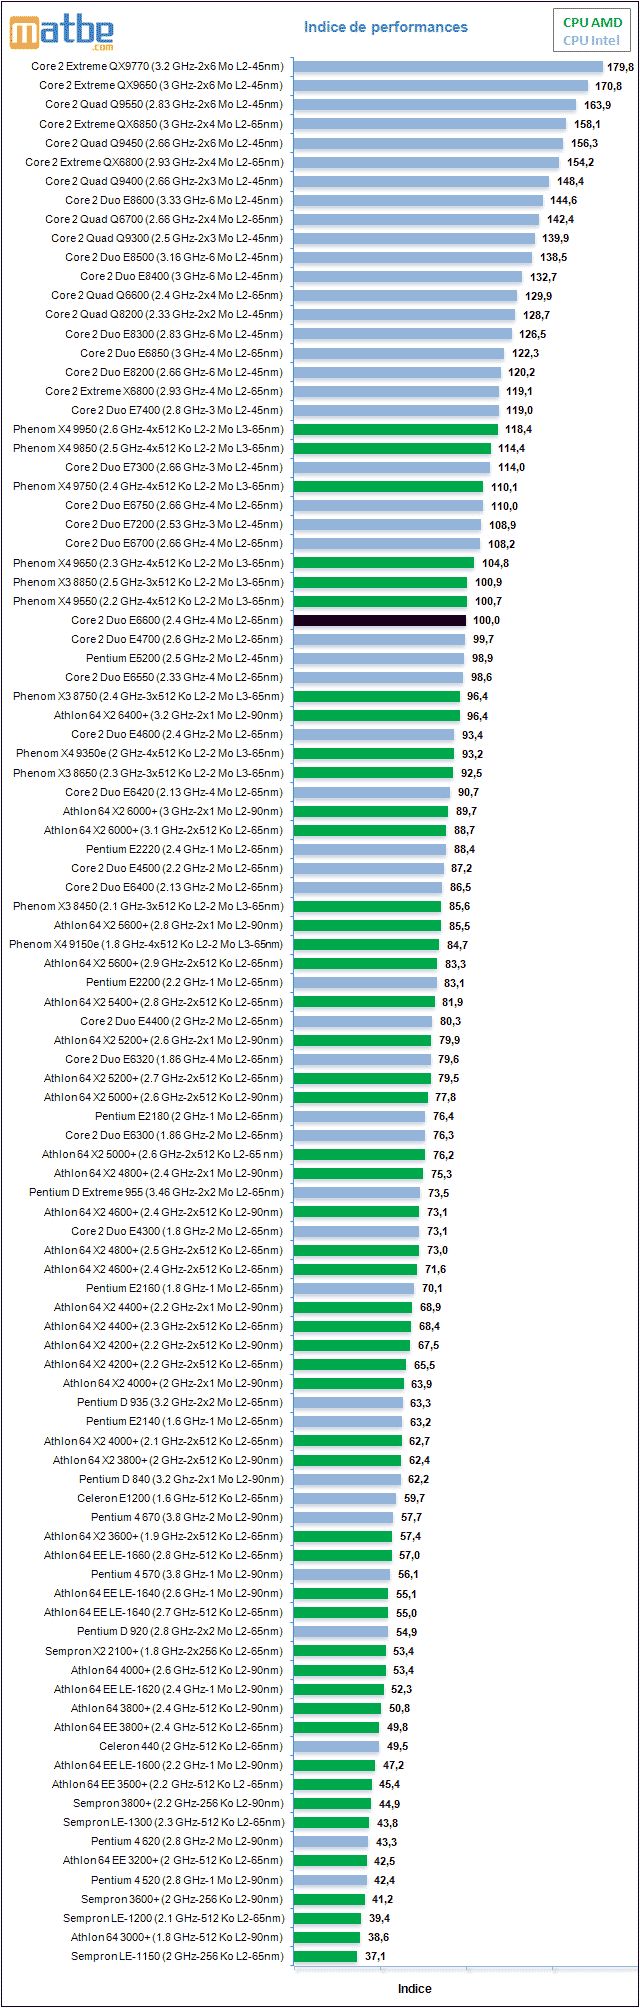 En güncel 100 işlemci (50 AMD - 50 Intel) aynı karşılaştırmada